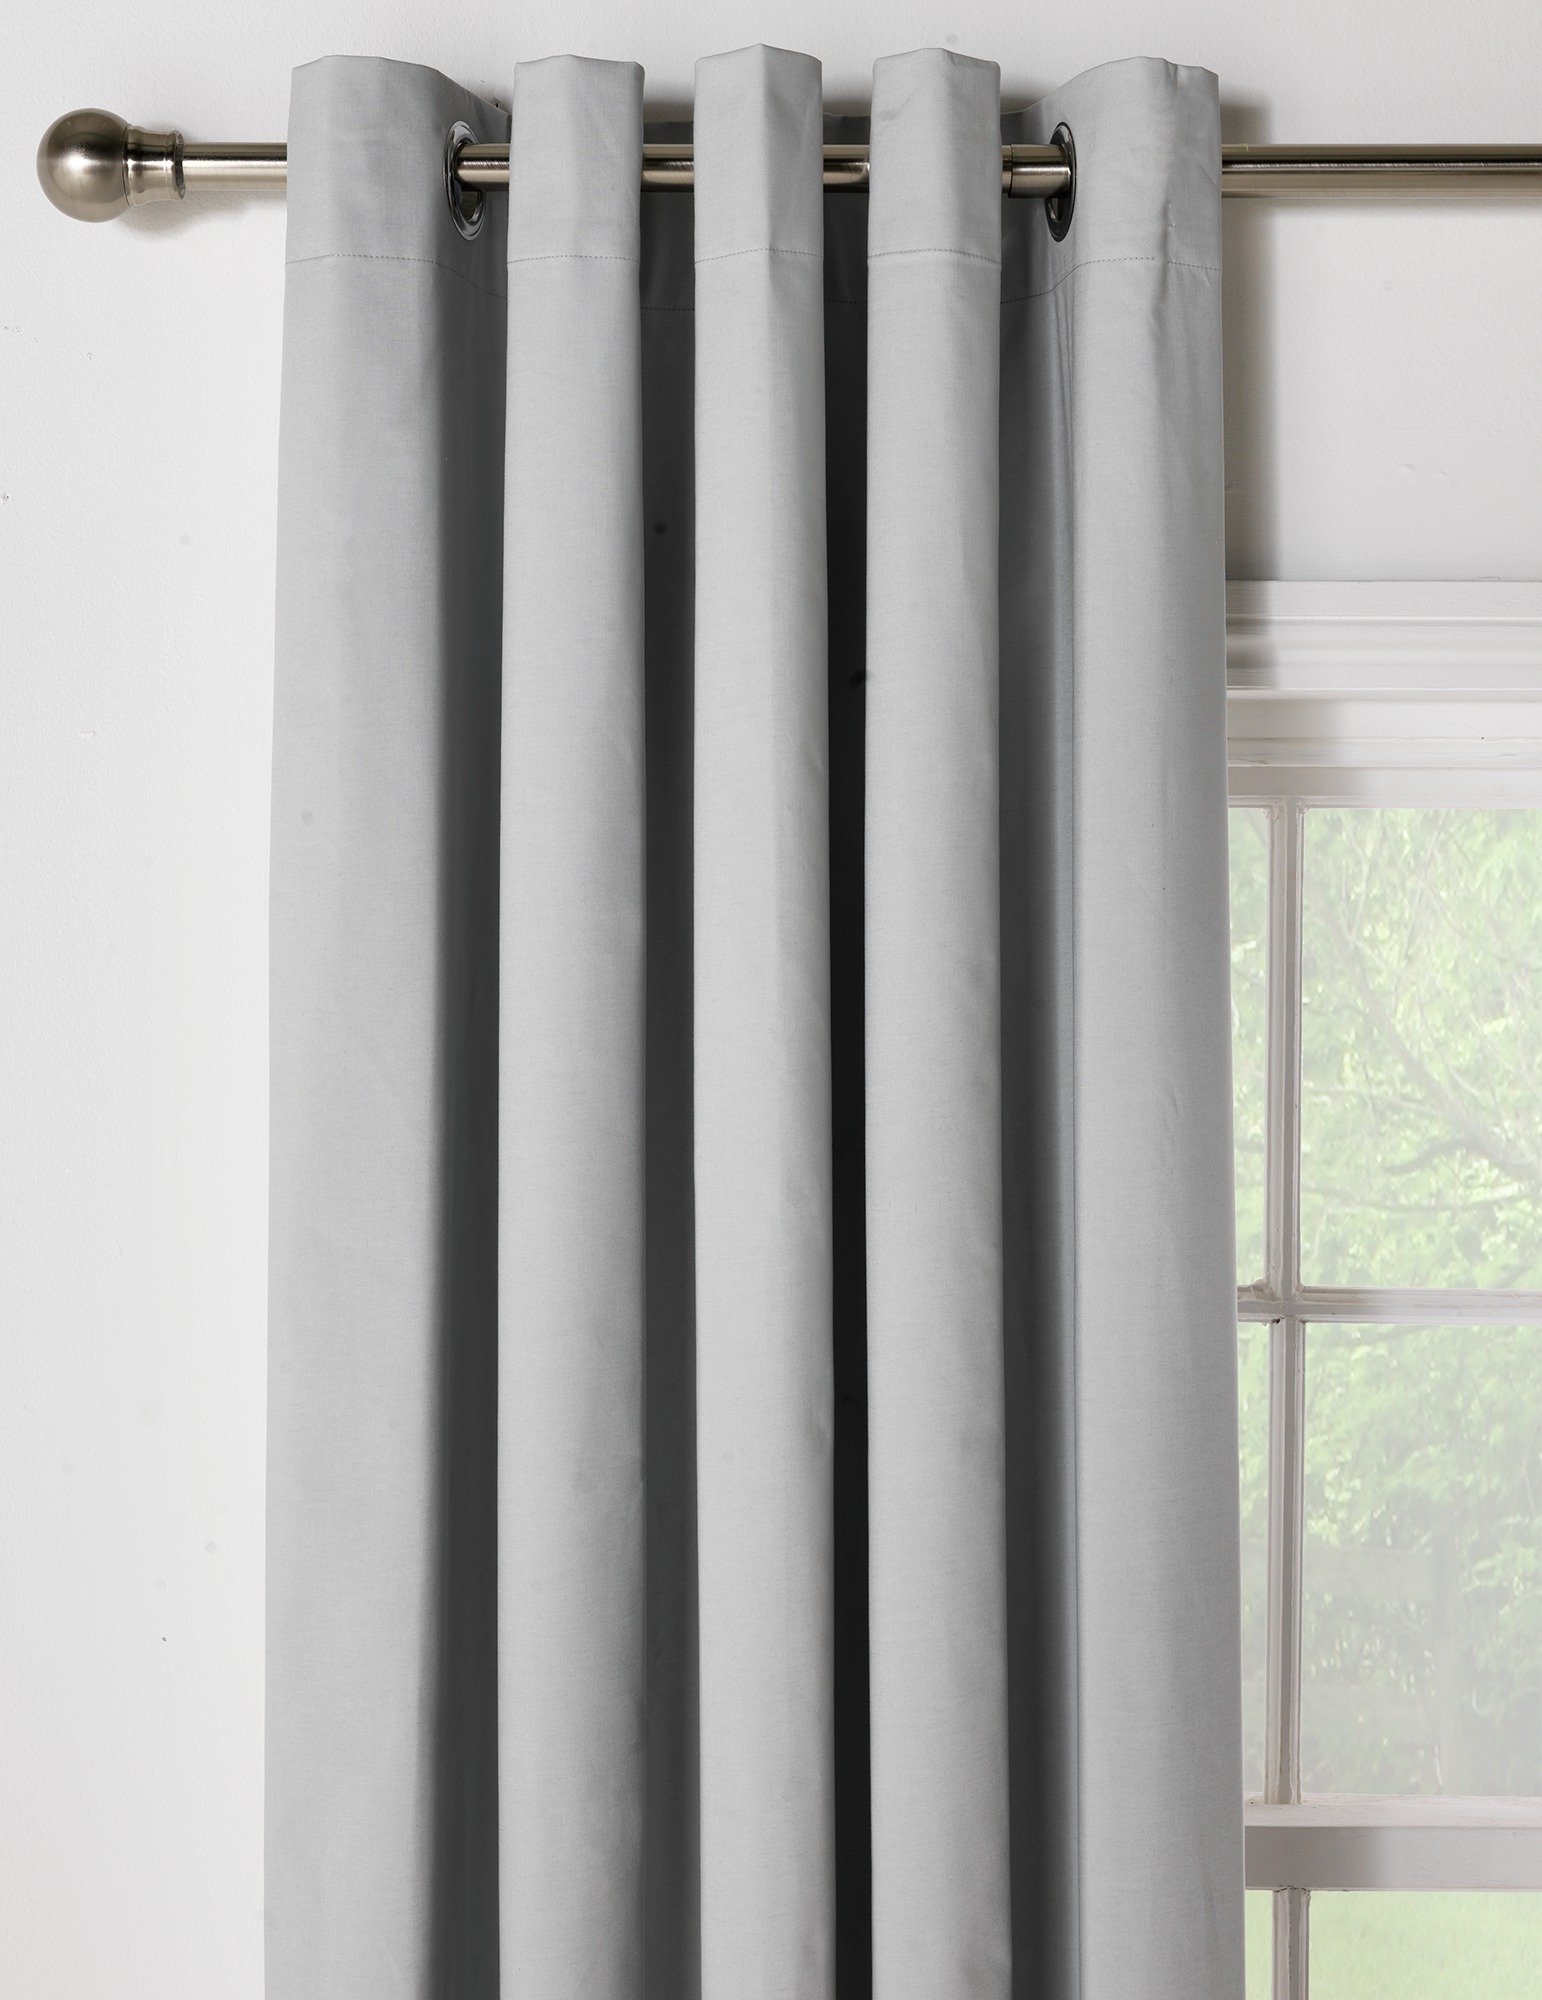 ColourMatch Blackout Curtains - 117x183cm - Dove Grey